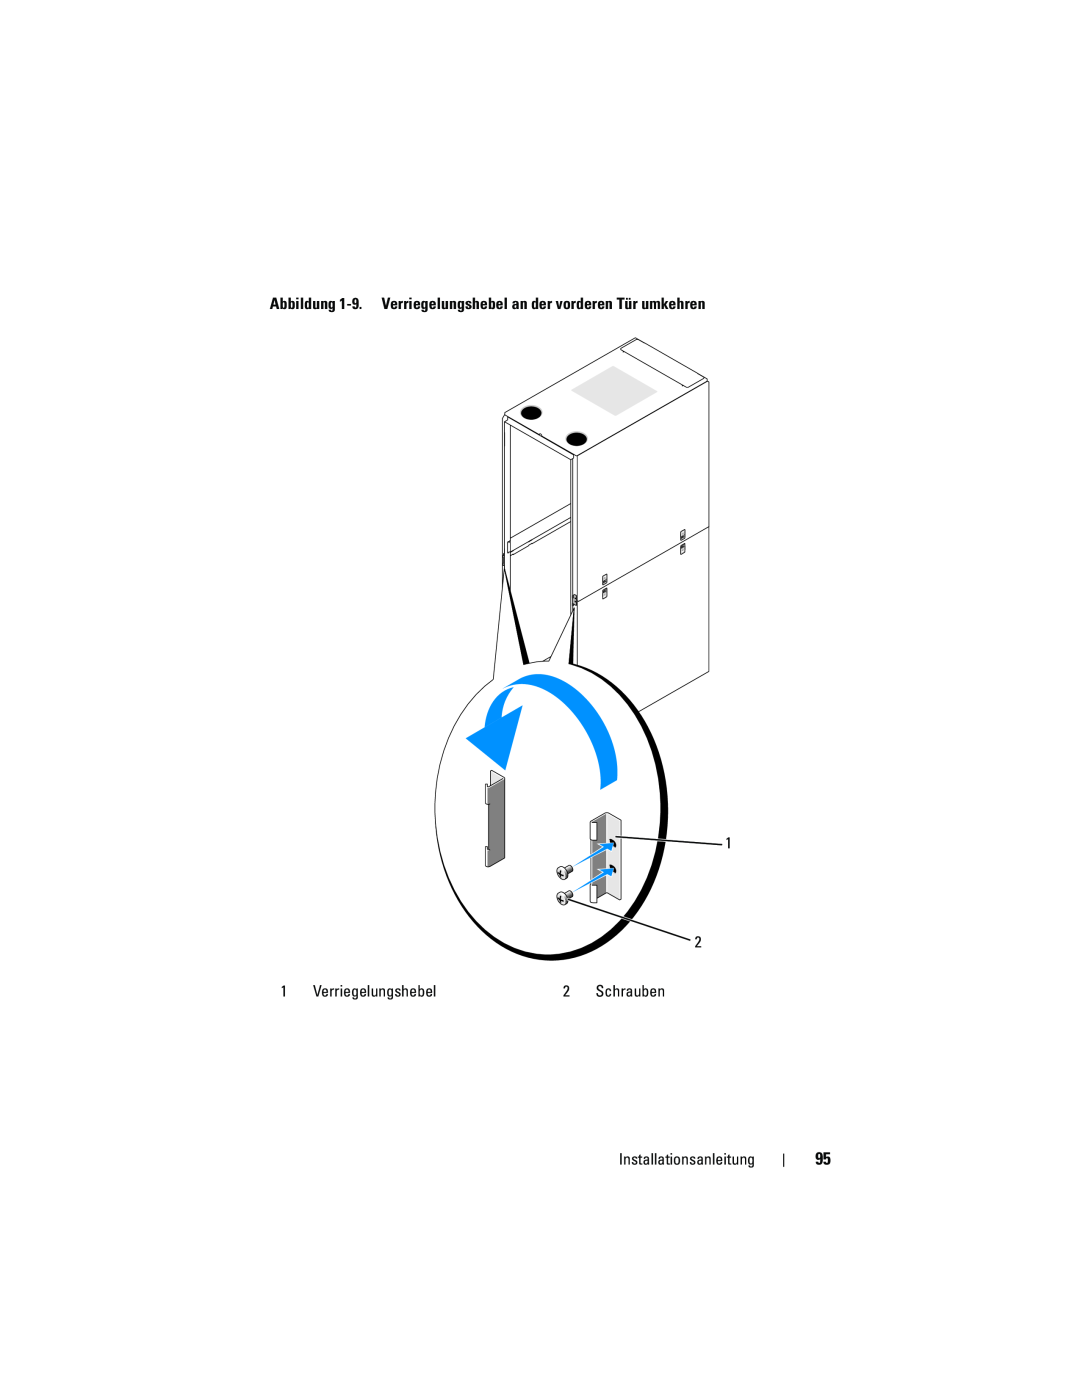 Dell 4220 manual Abbildung 1-9. Verriegelungshebel an der vorderen Tür umkehren, Installationsanleitung, Schrauben 